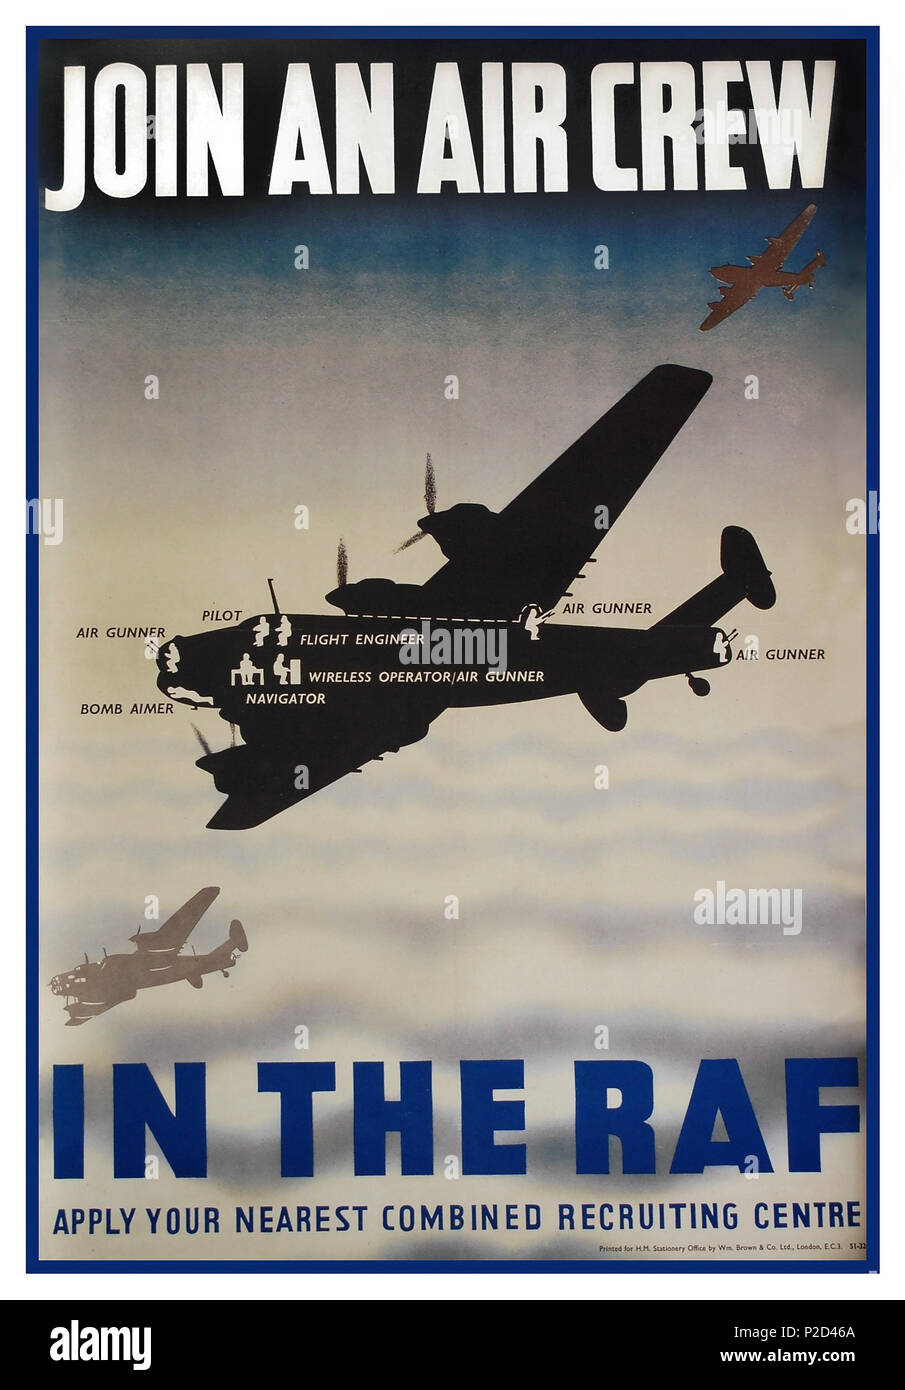 1940 Vintage WW2 affiche de recrutement pour la RAF pour demander à l'équipage d'air inscrivez-vous dans l'effort de guerre contre l'Allemagne nazie dans les avions est la célèbre silhouette schématique Avro Lancaster un quadrimoteur britannique Seconde Guerre mondiale bombardier lourd conçu et fabriqué par Avro, connu sous le nom de bombardier Lancaster Banque D'Images